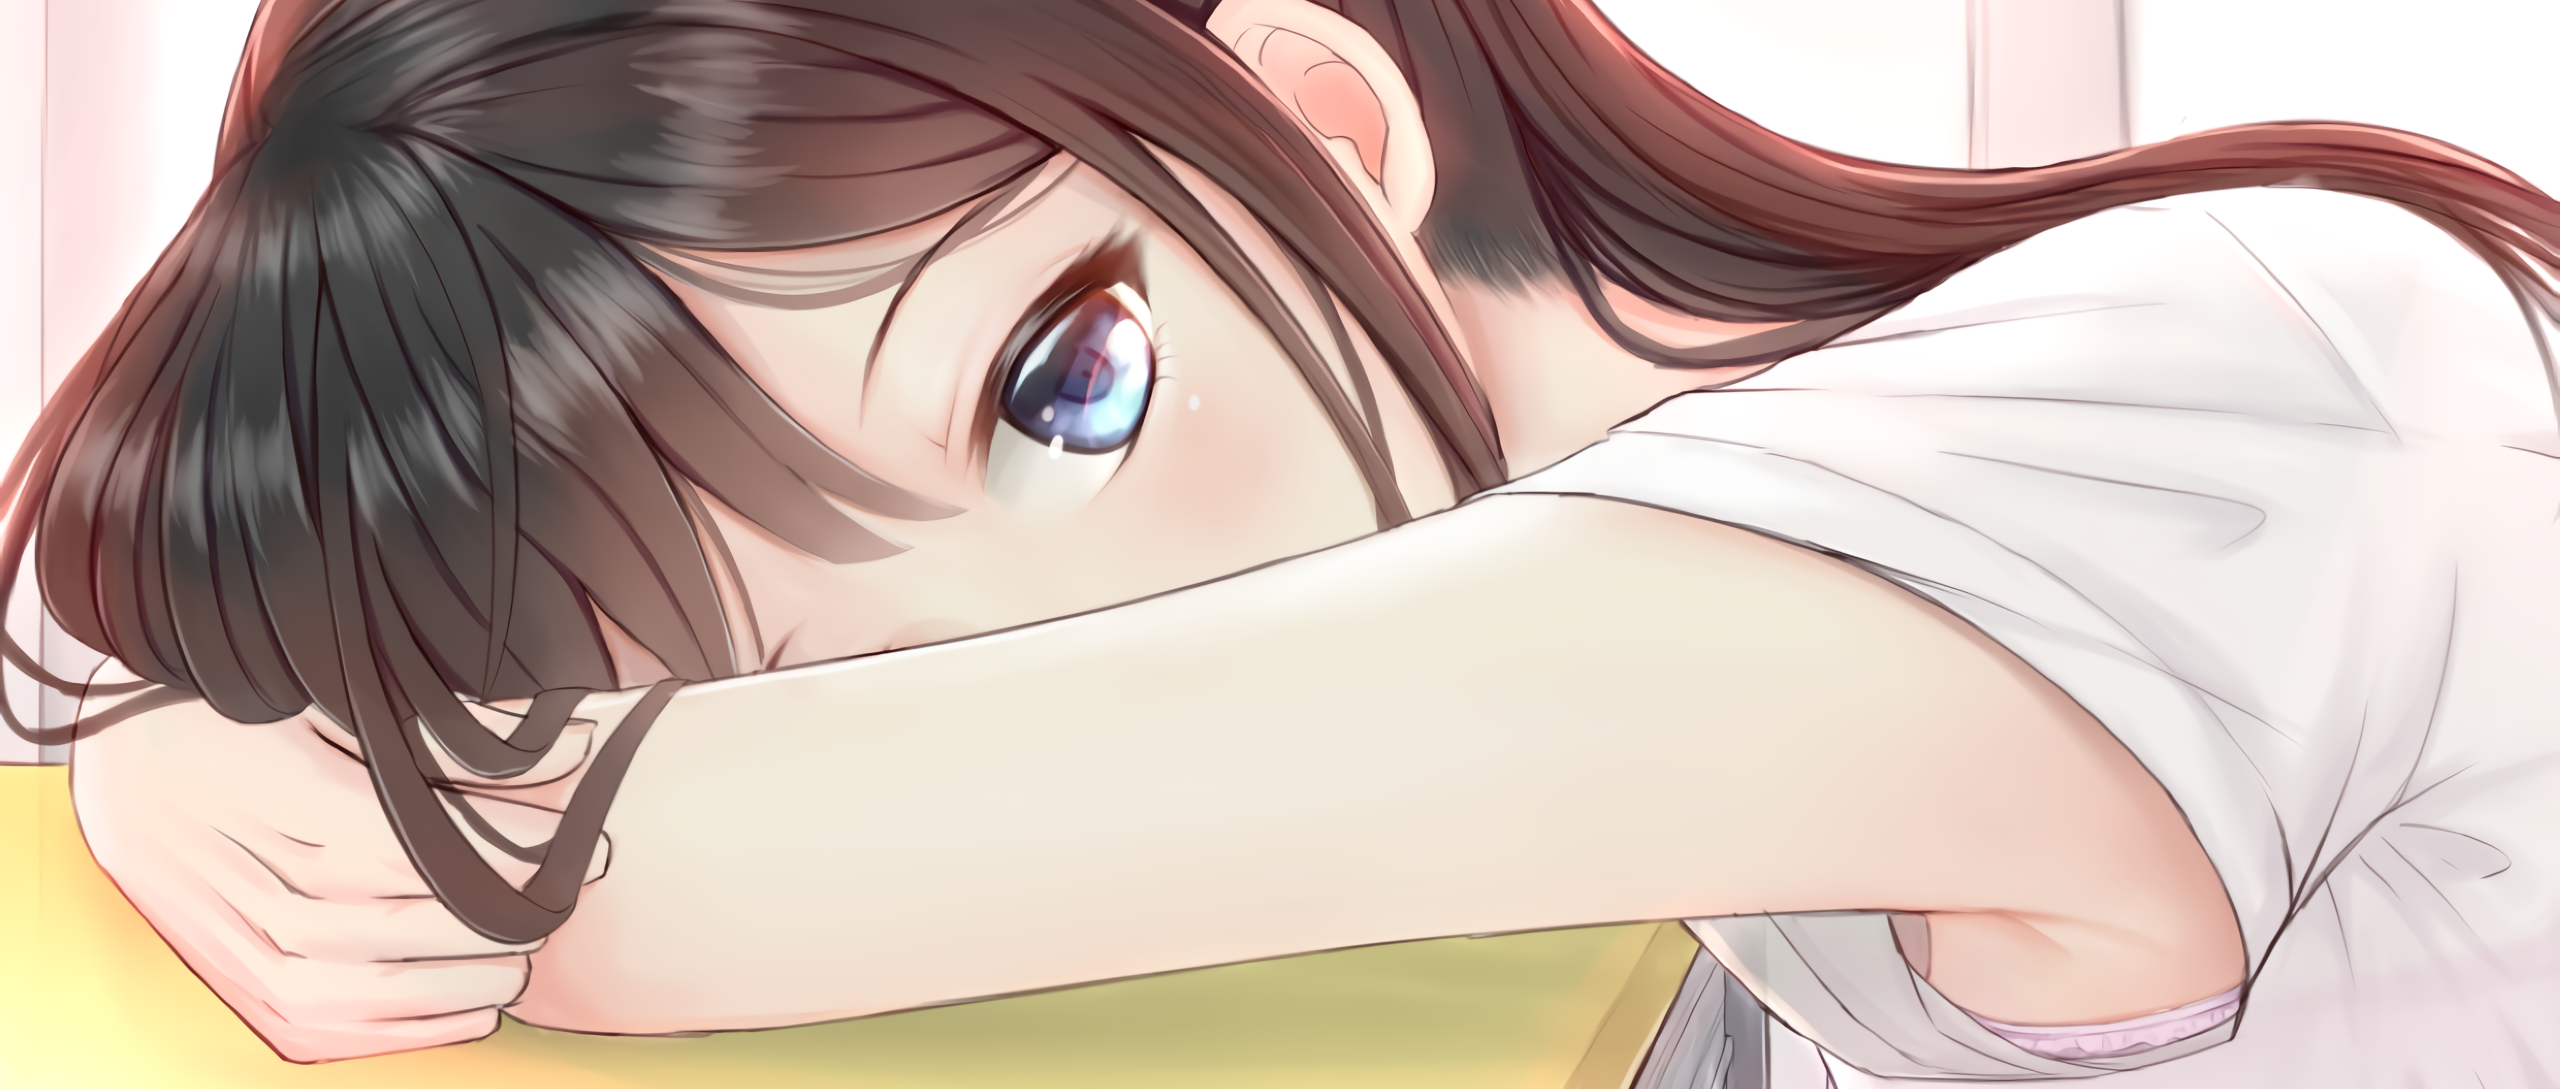 Anime 2560x1089 anime girls pink bra anime blue eyes desk brunette armpits